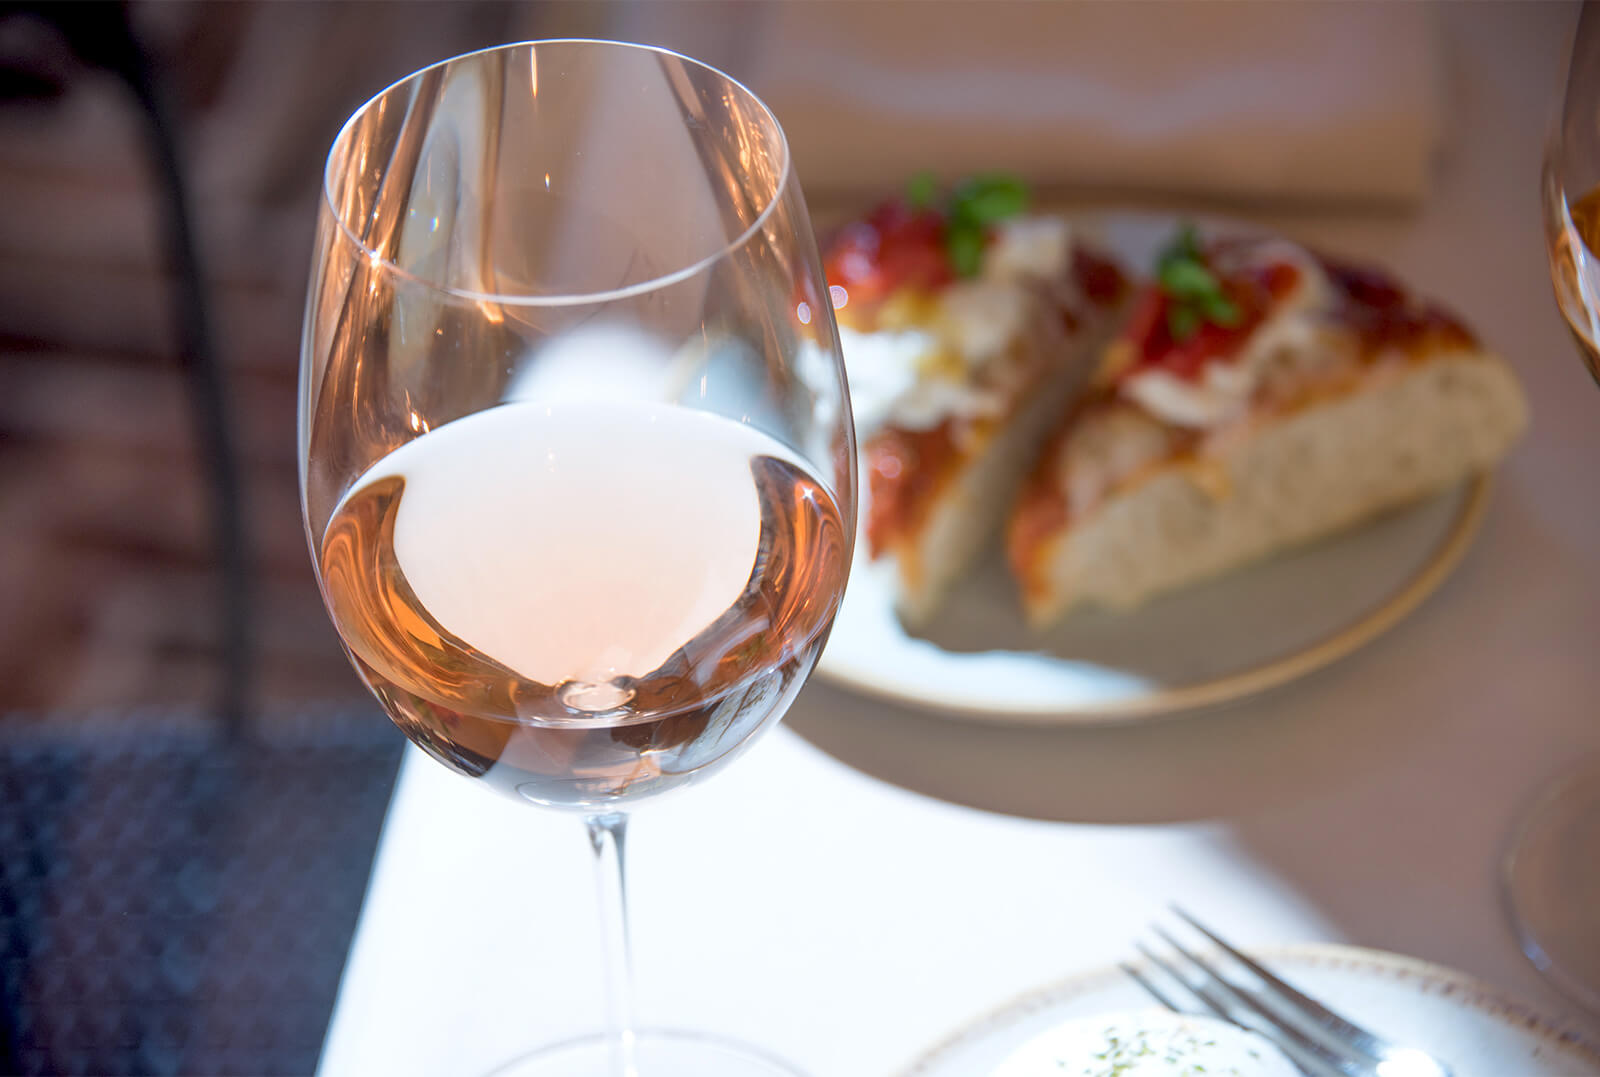 Chiaretto is a dry and crisp Italian rosé wine